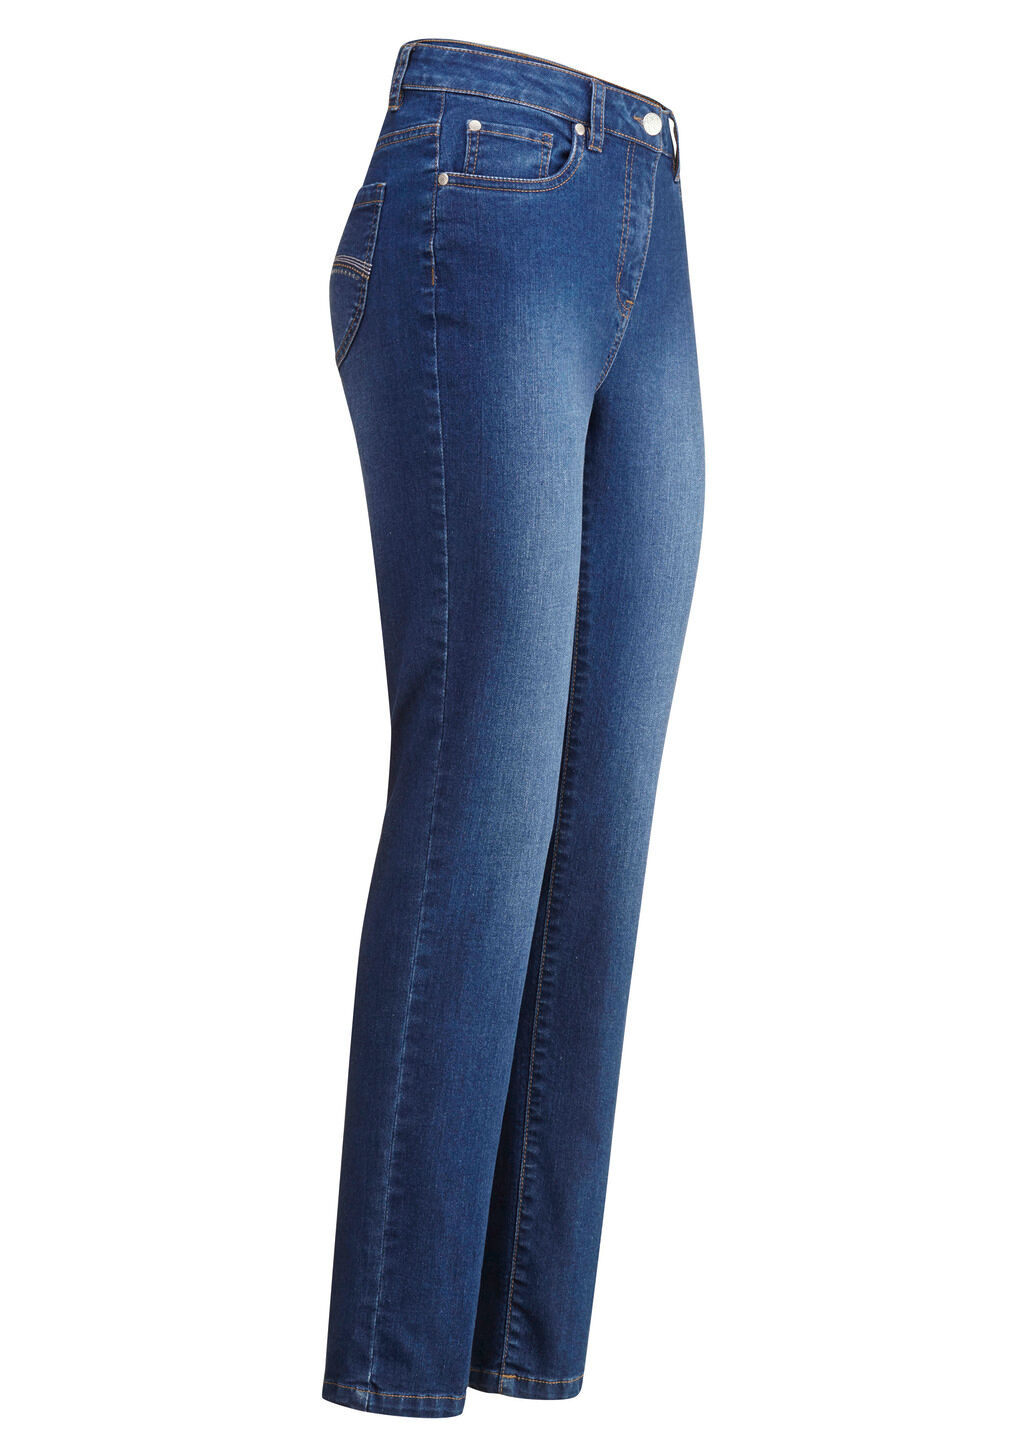 BADER Jeans mit schönen Stickereien und funkelnden Strassteinen, Jeansblau, Größe 25